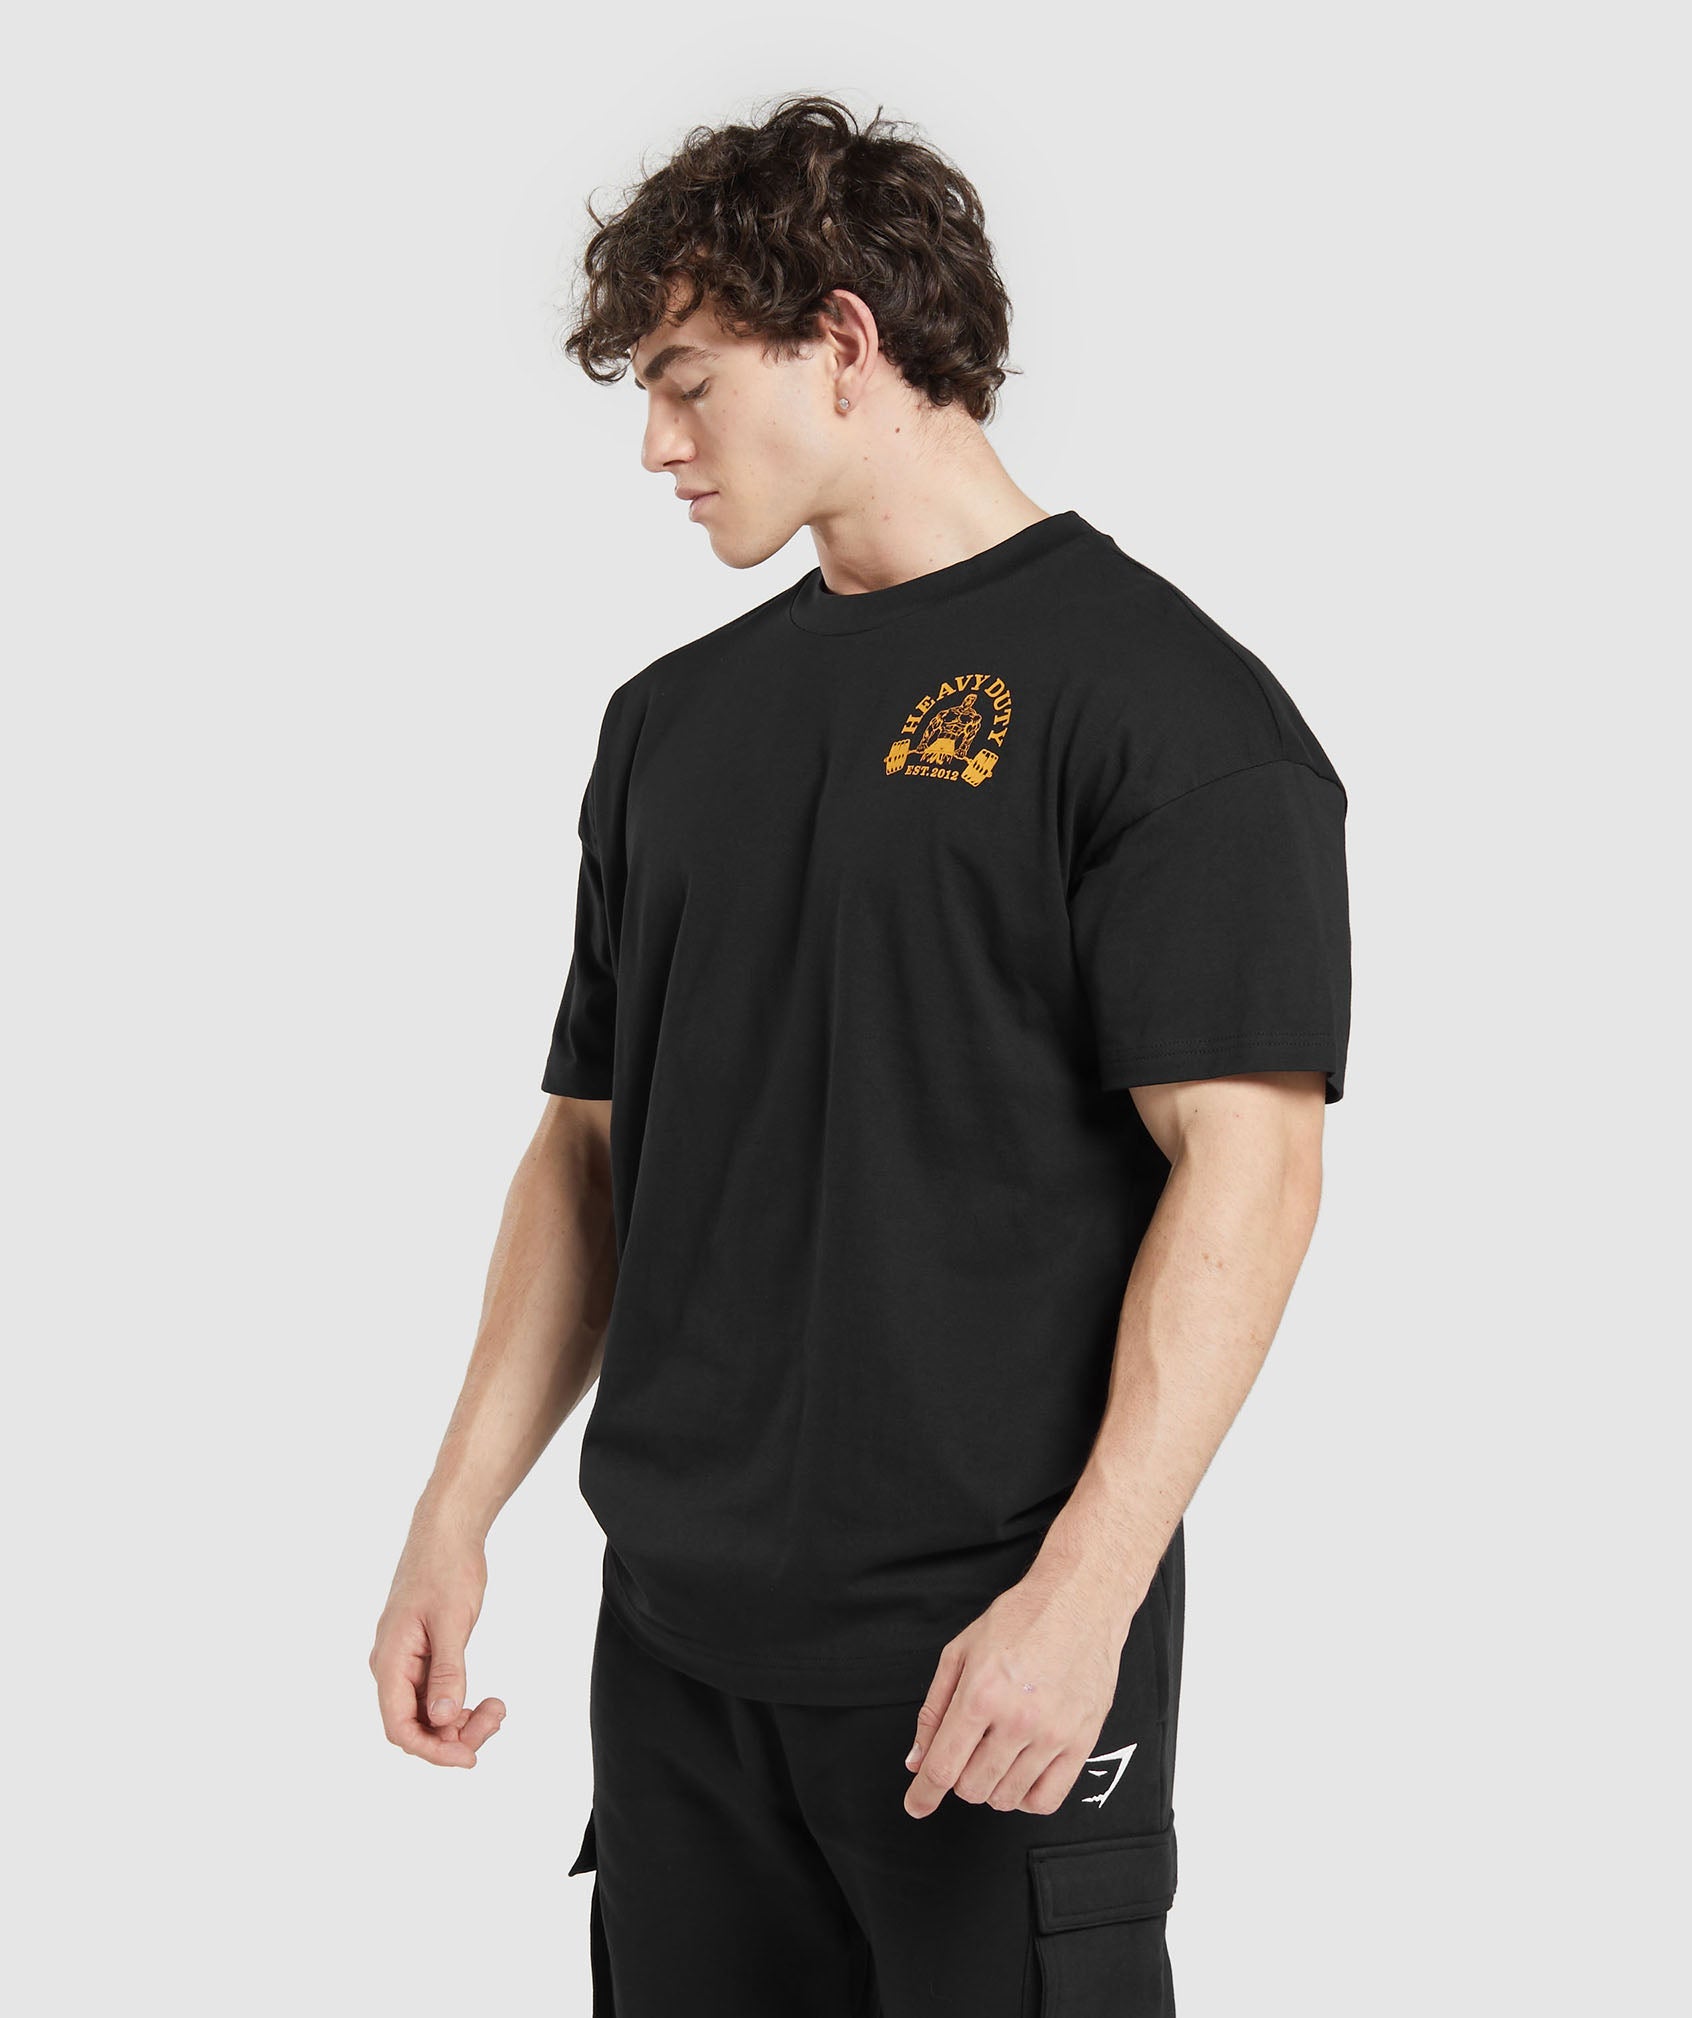 Heavy Duty T-Shirt in Black - view 3